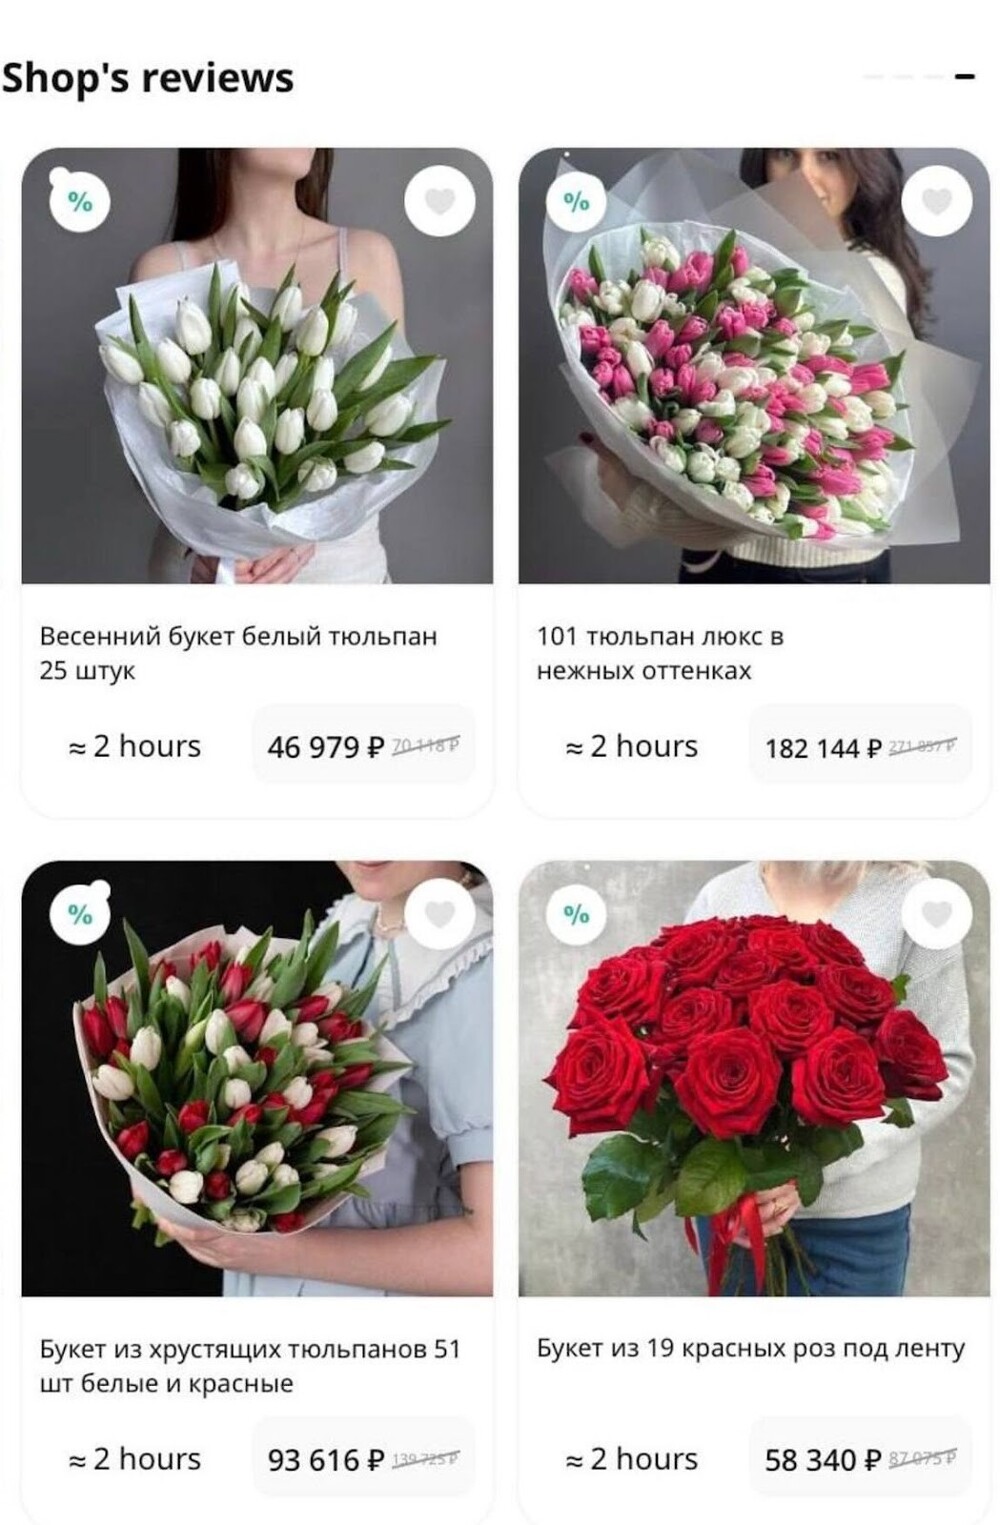 В Госдуме предложили запретить продавцам цветов задирать цены на праздники